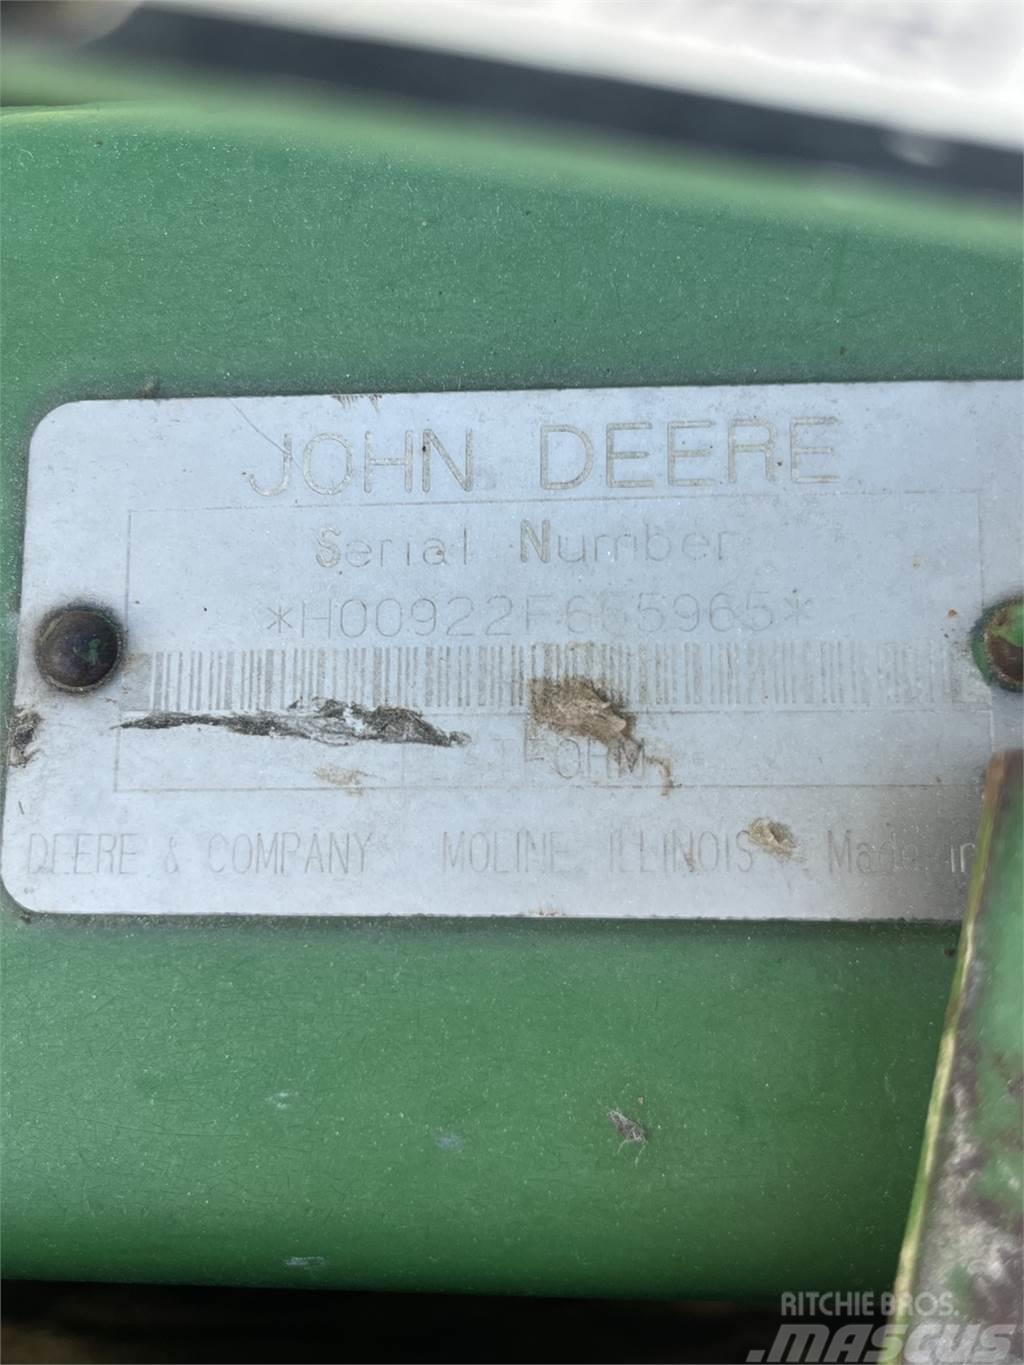 John Deere 922 Príslušenstvo a náhradné diely ku kombajnom